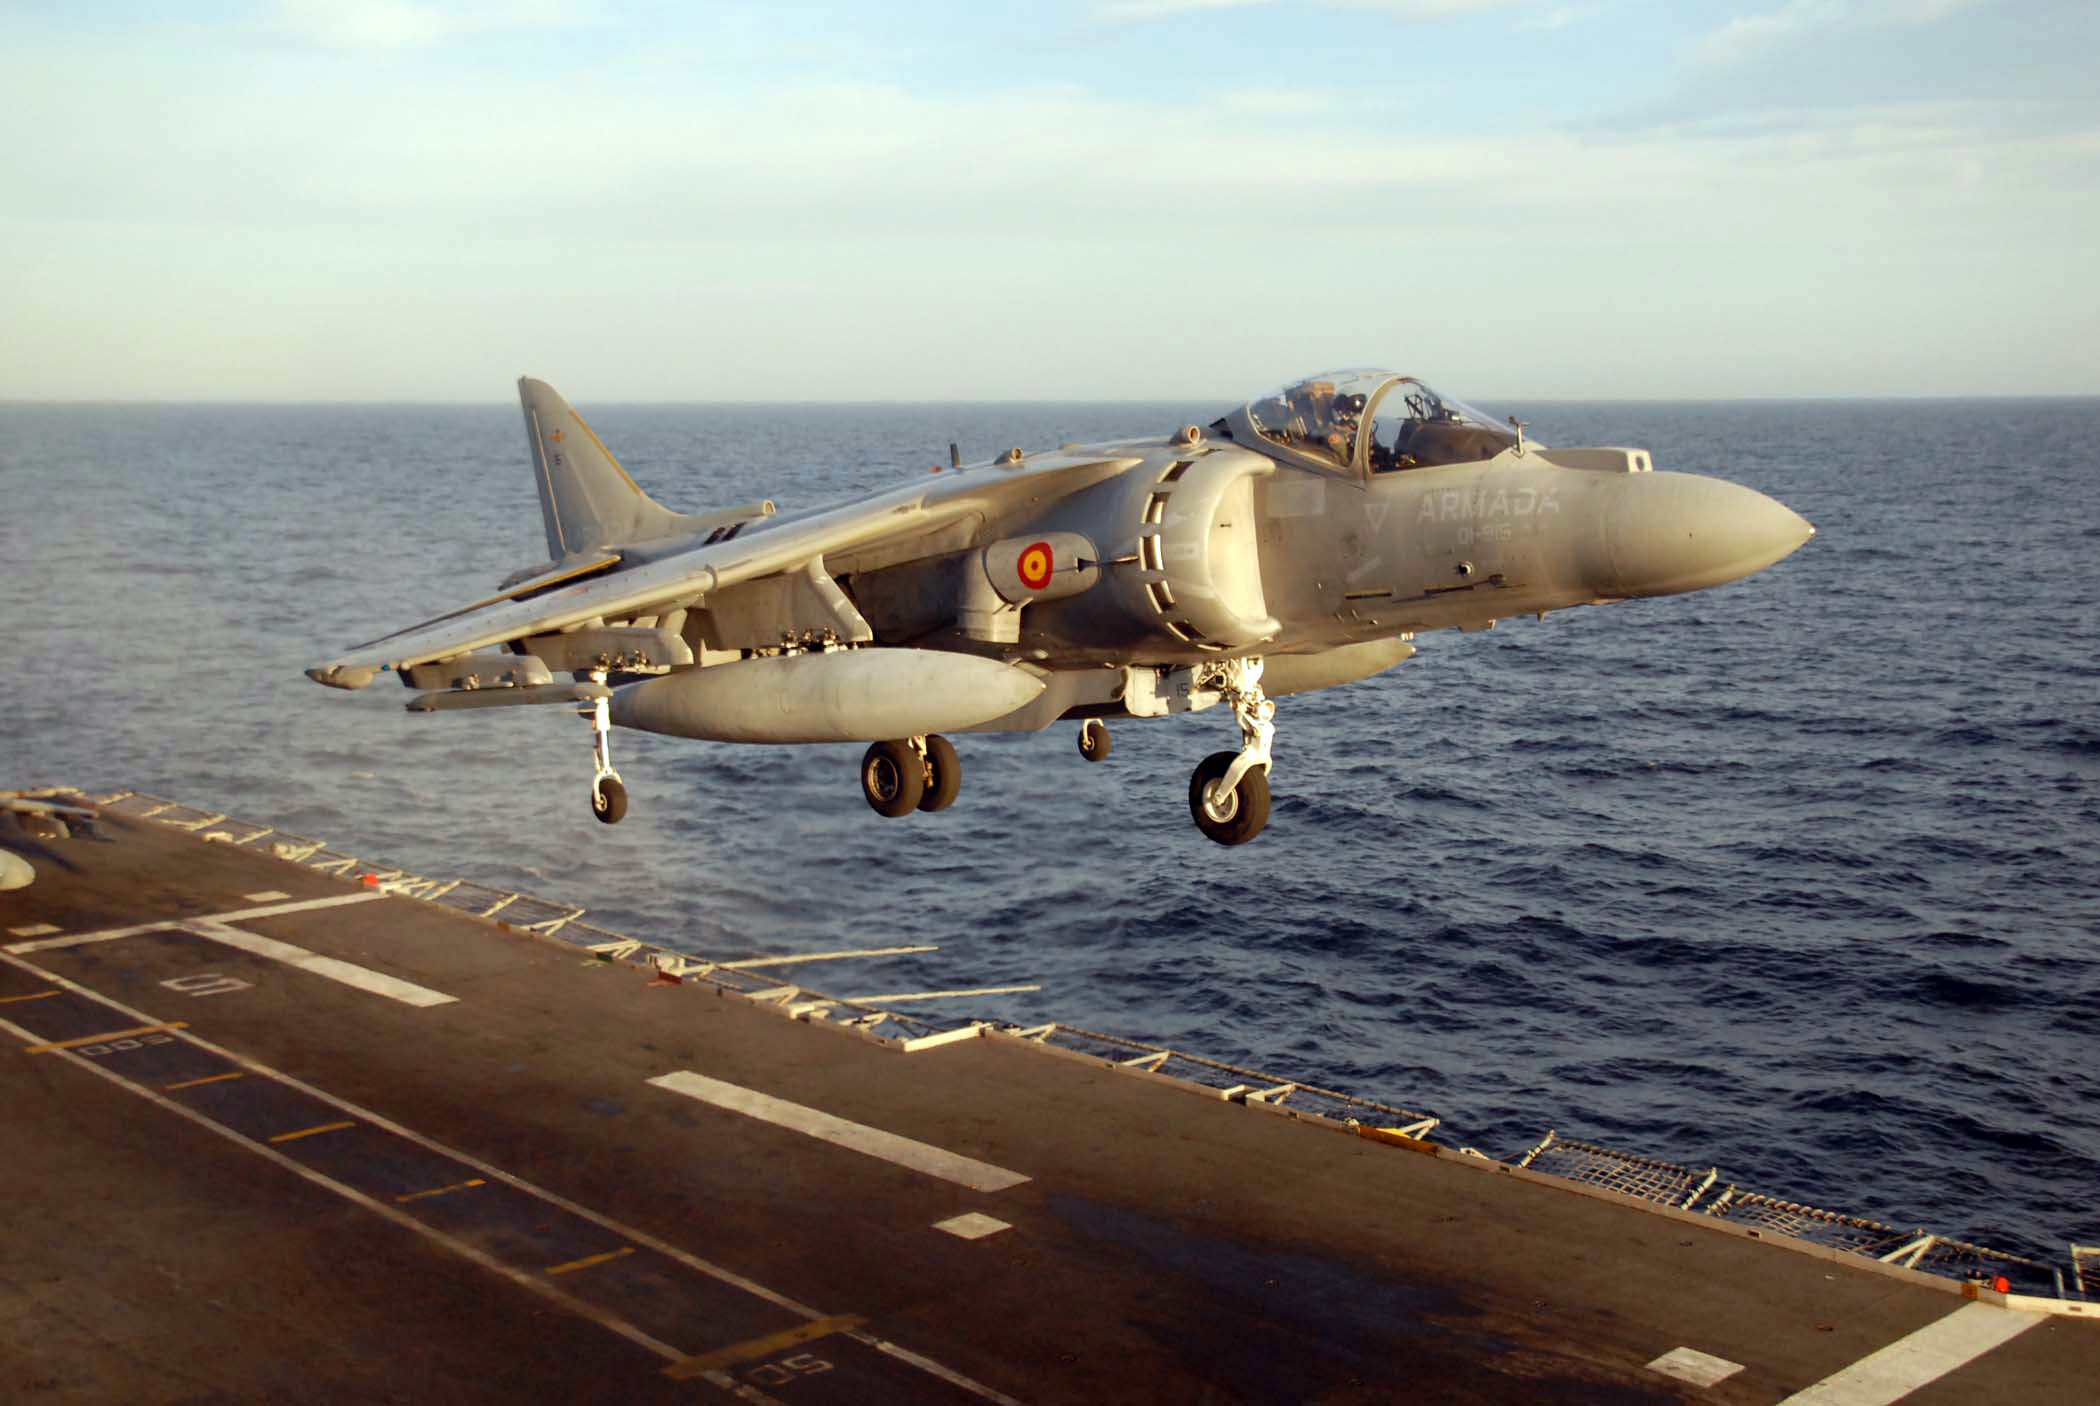 Spanish_Navy_AV-8B_Harrier_II_070223-N-3888C-004.jpg